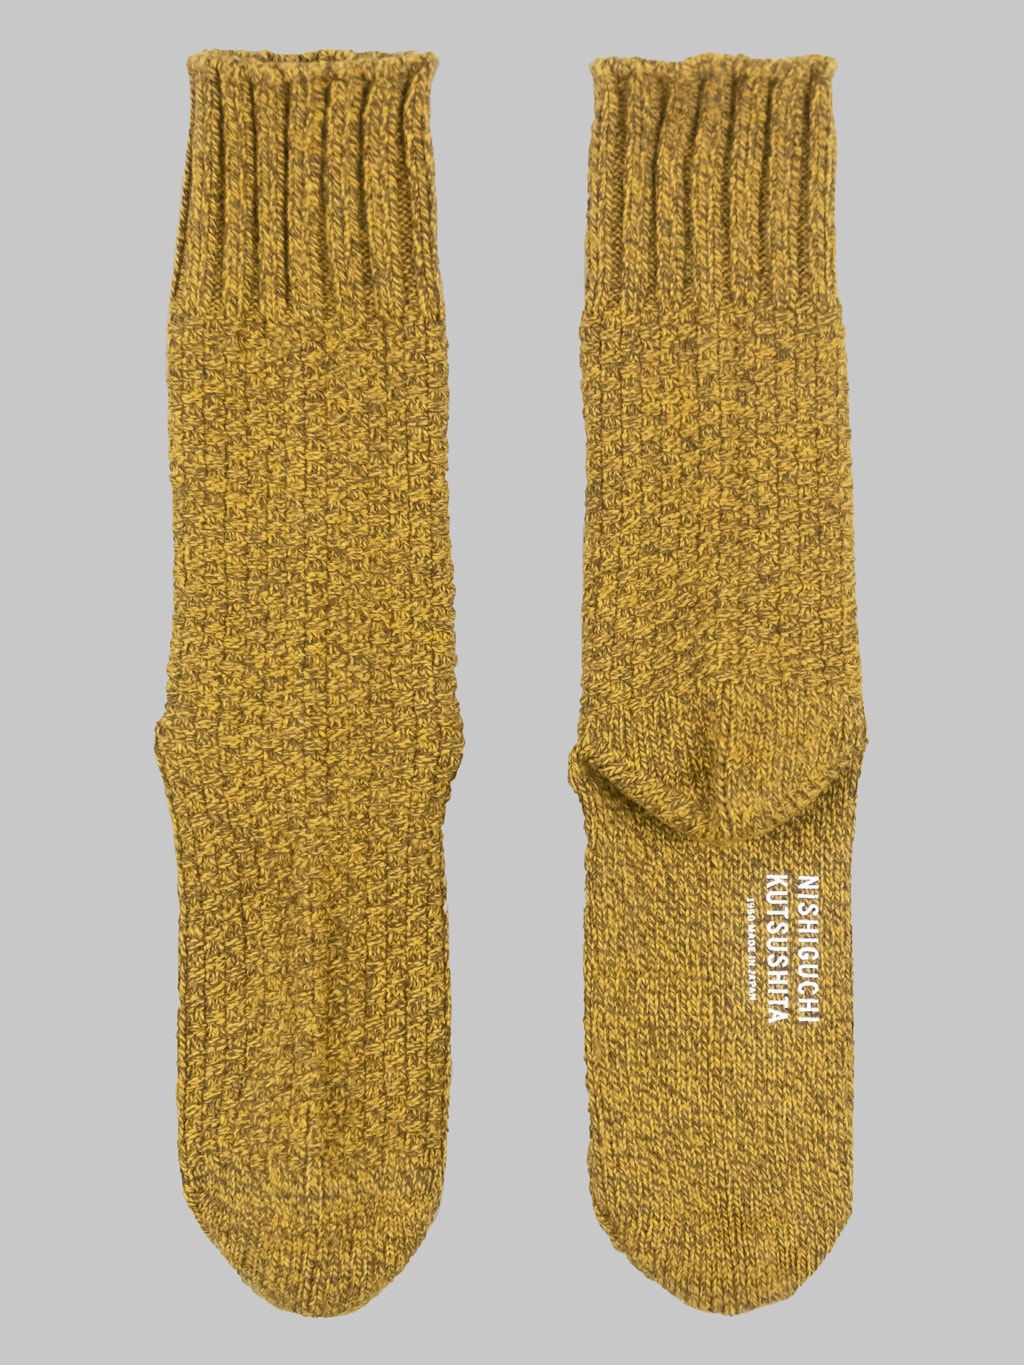 nishiguchi kutsushita boston wool cotton boot socks mustard back